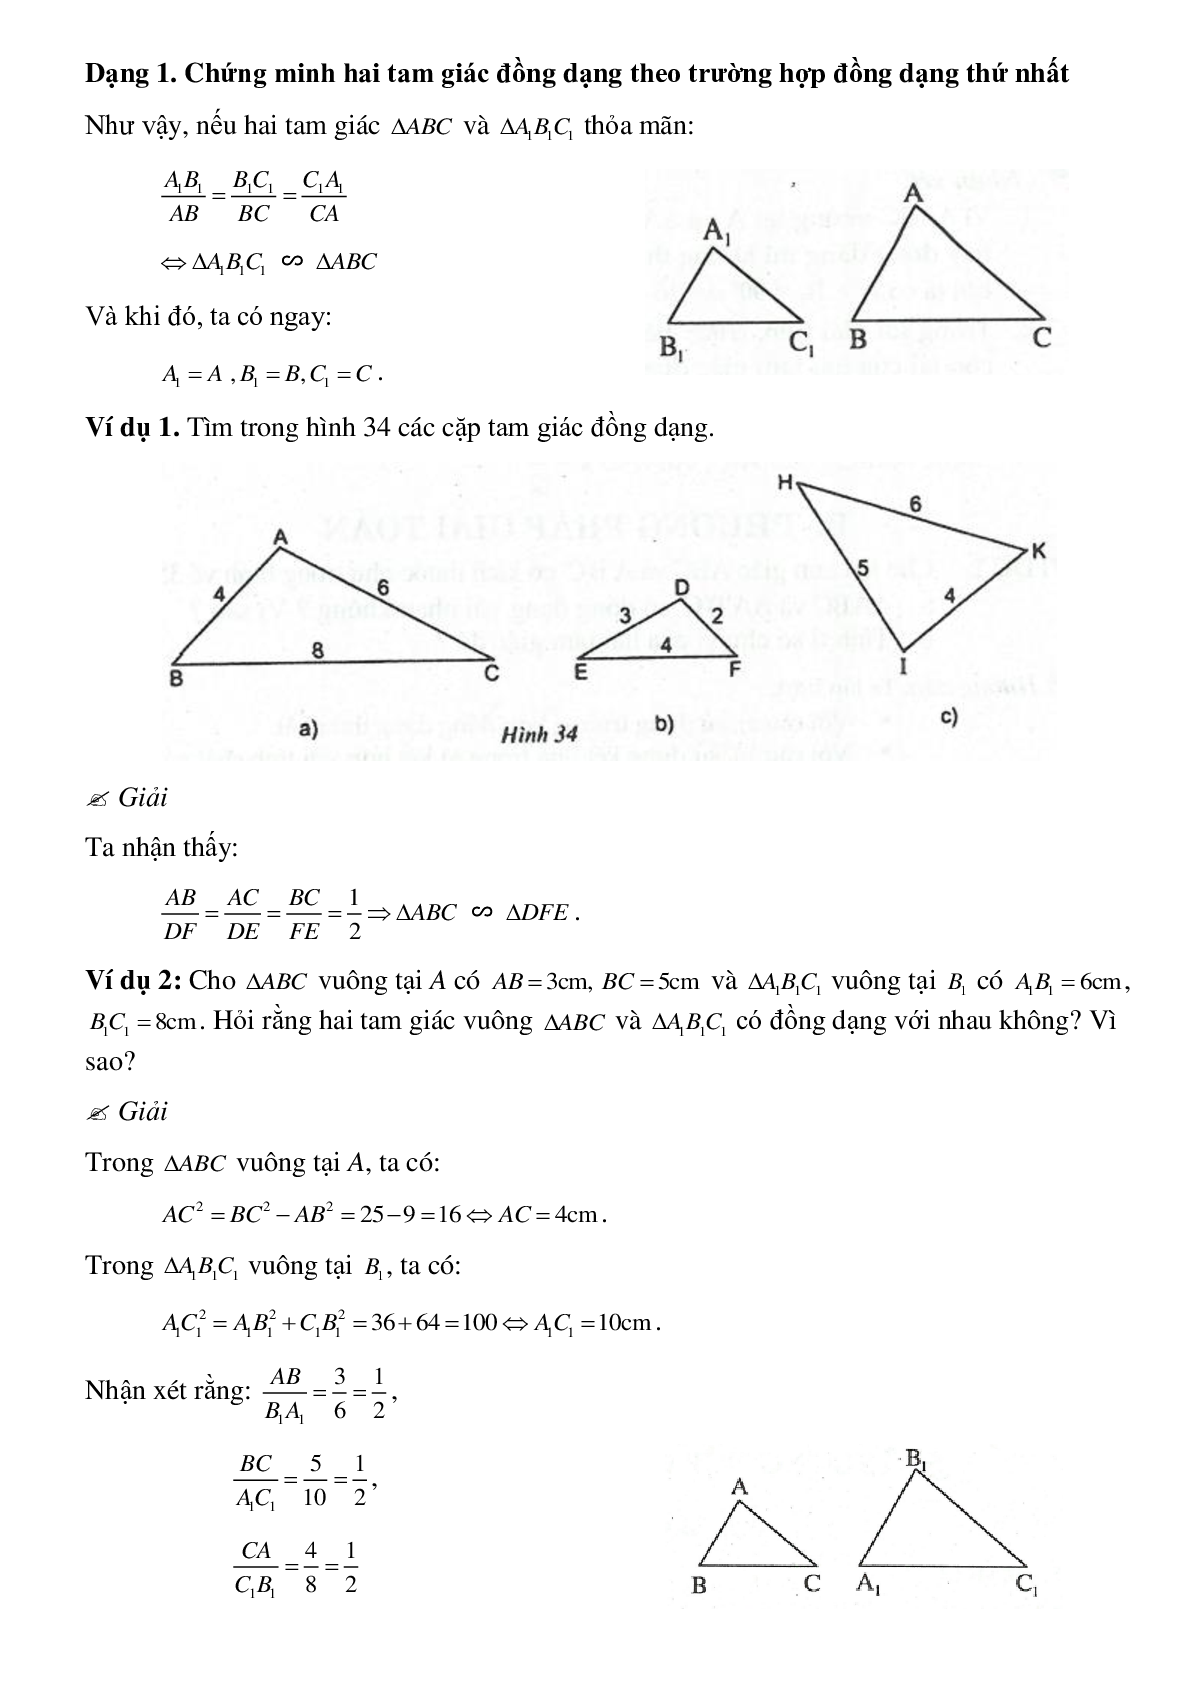 Phương pháp giải cụ thể, bài bác tập dượt về Chứng minh nhị tam giác đồng dạng tinh lọc (trang 2)